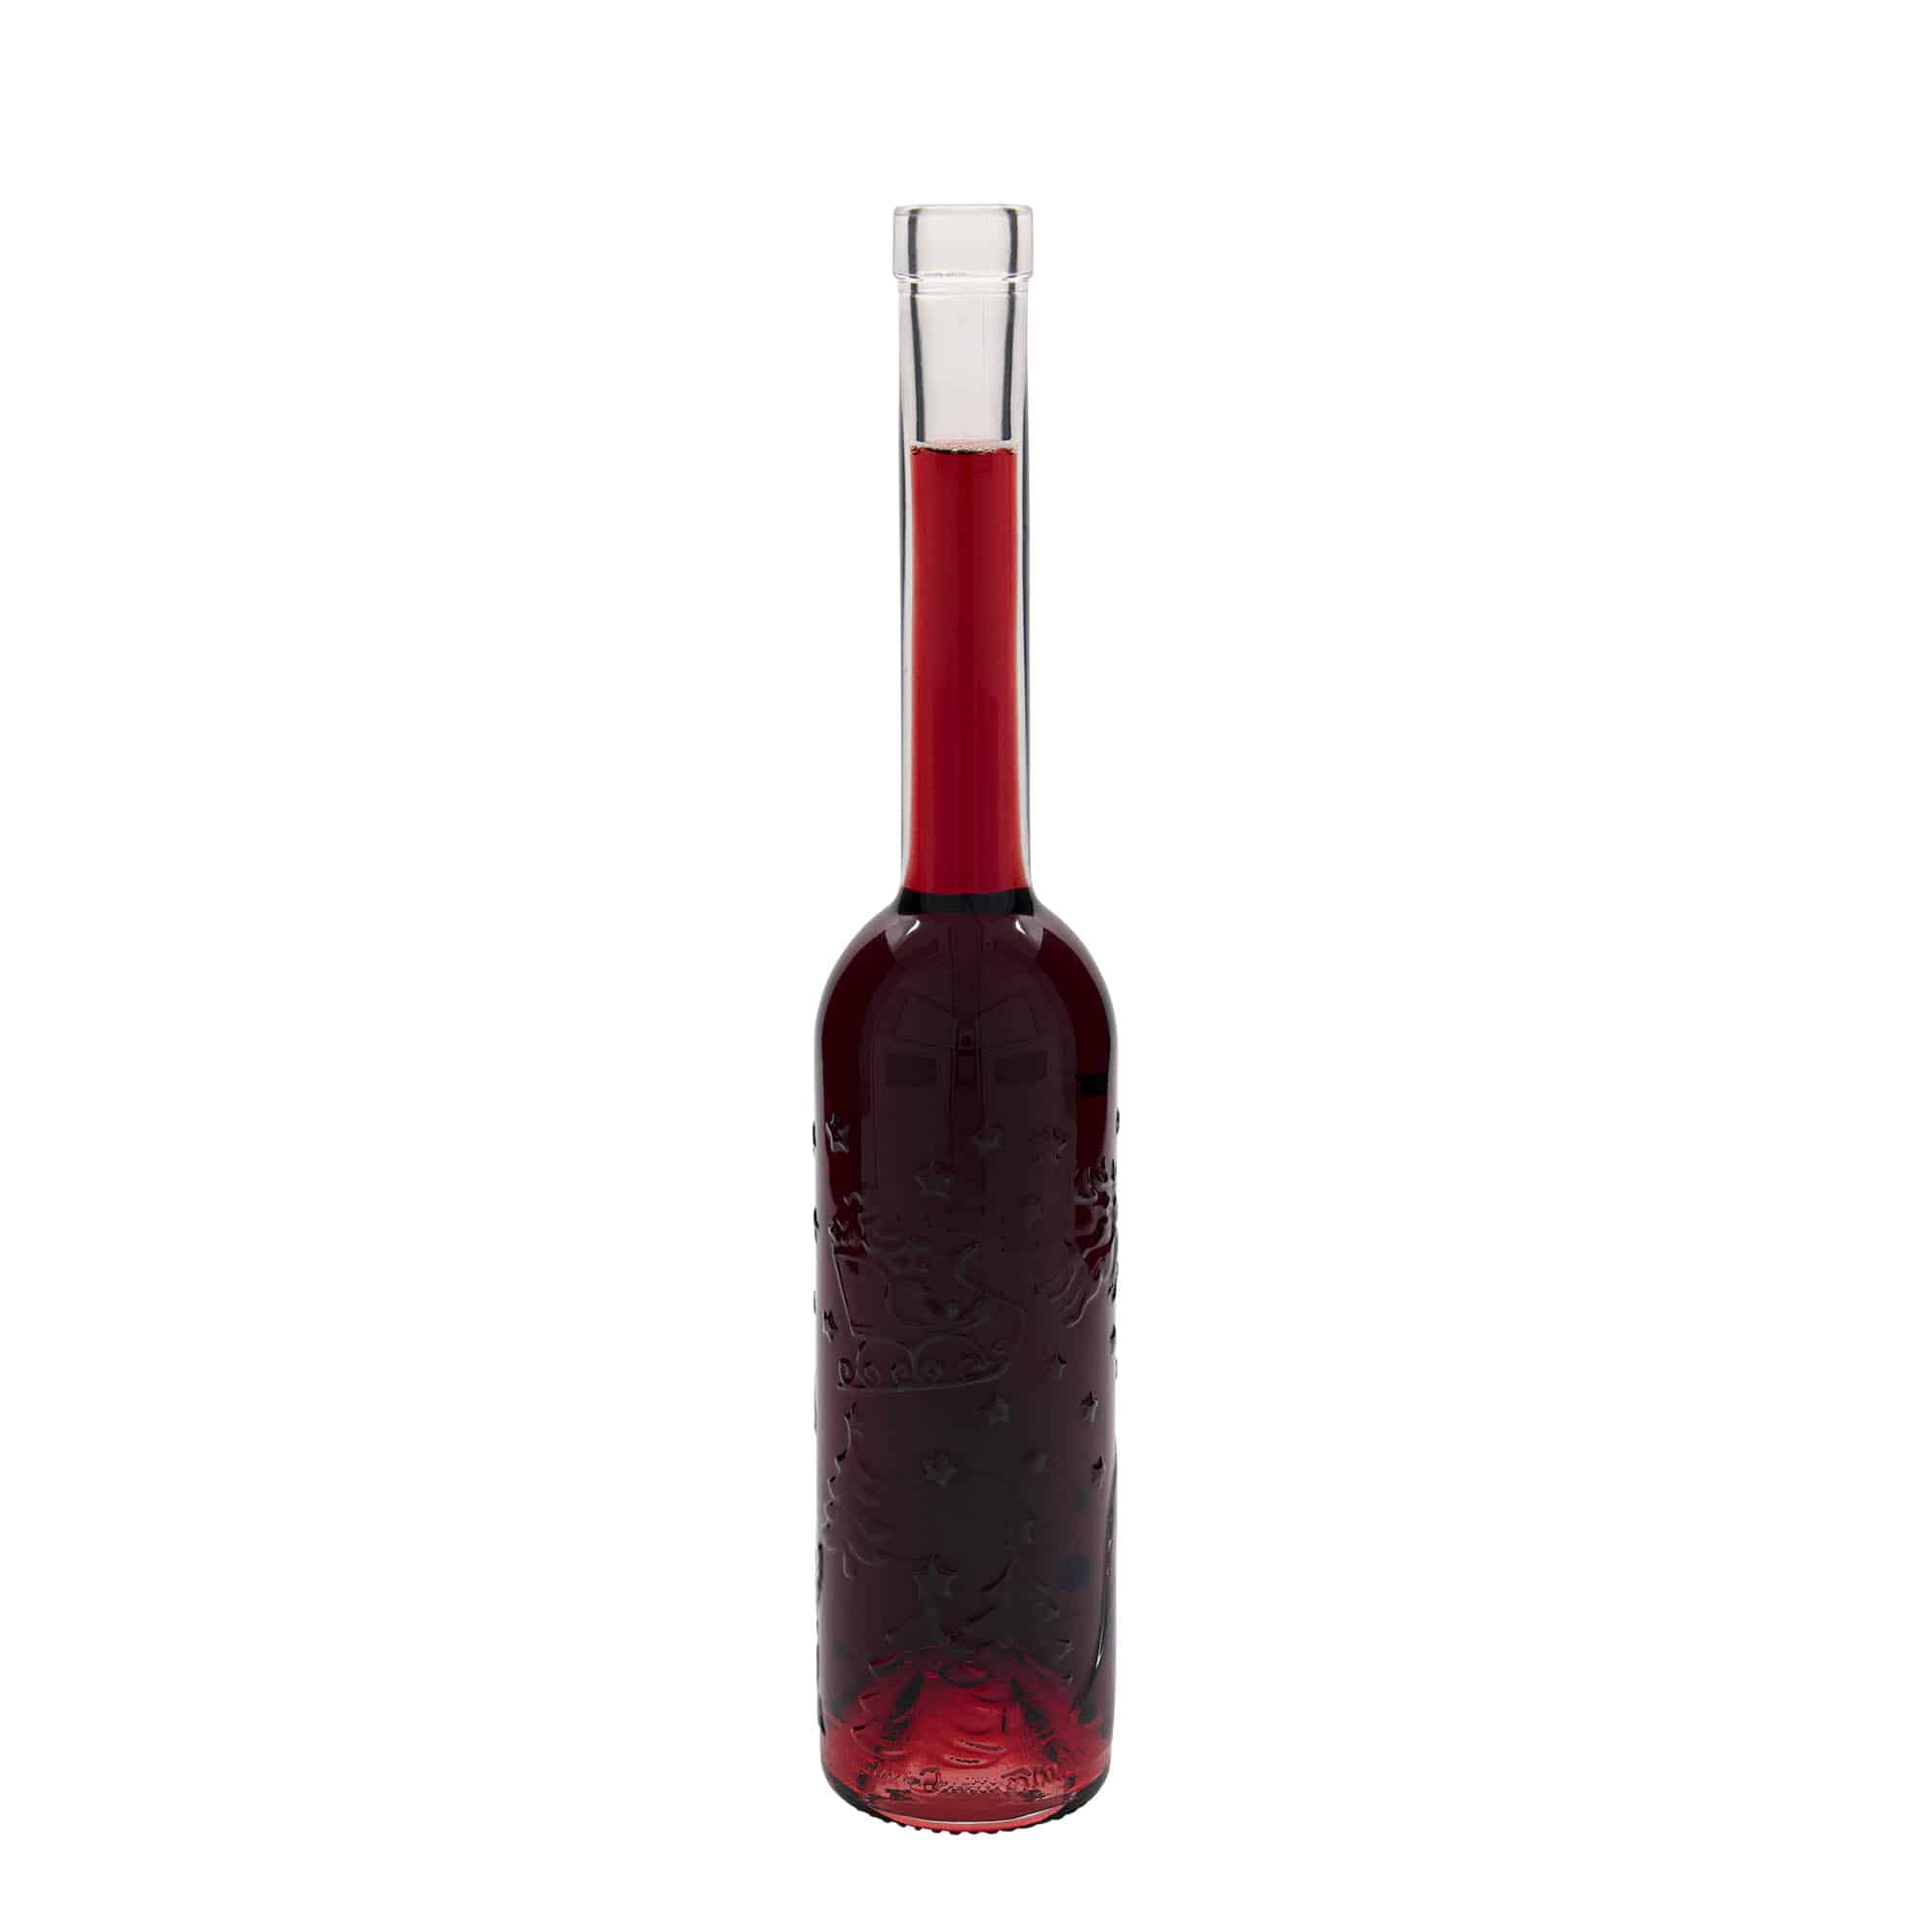 350 ml glass bottle 'Opera Weihnachts-Relief', closure: cork